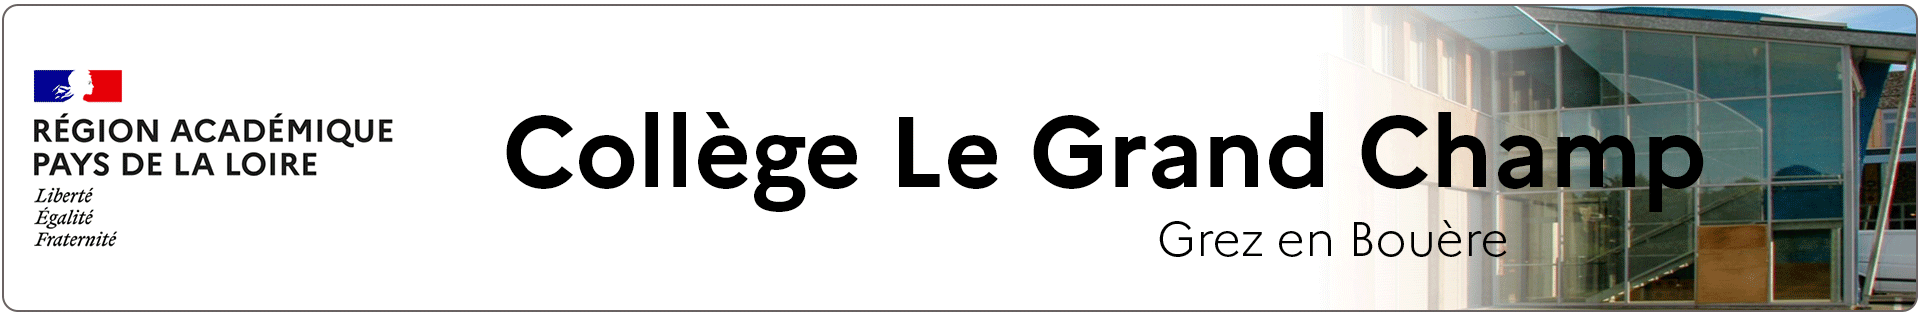 Bannière Pays de la Loire - Collège Le Grand Champ - Grez en Bouère